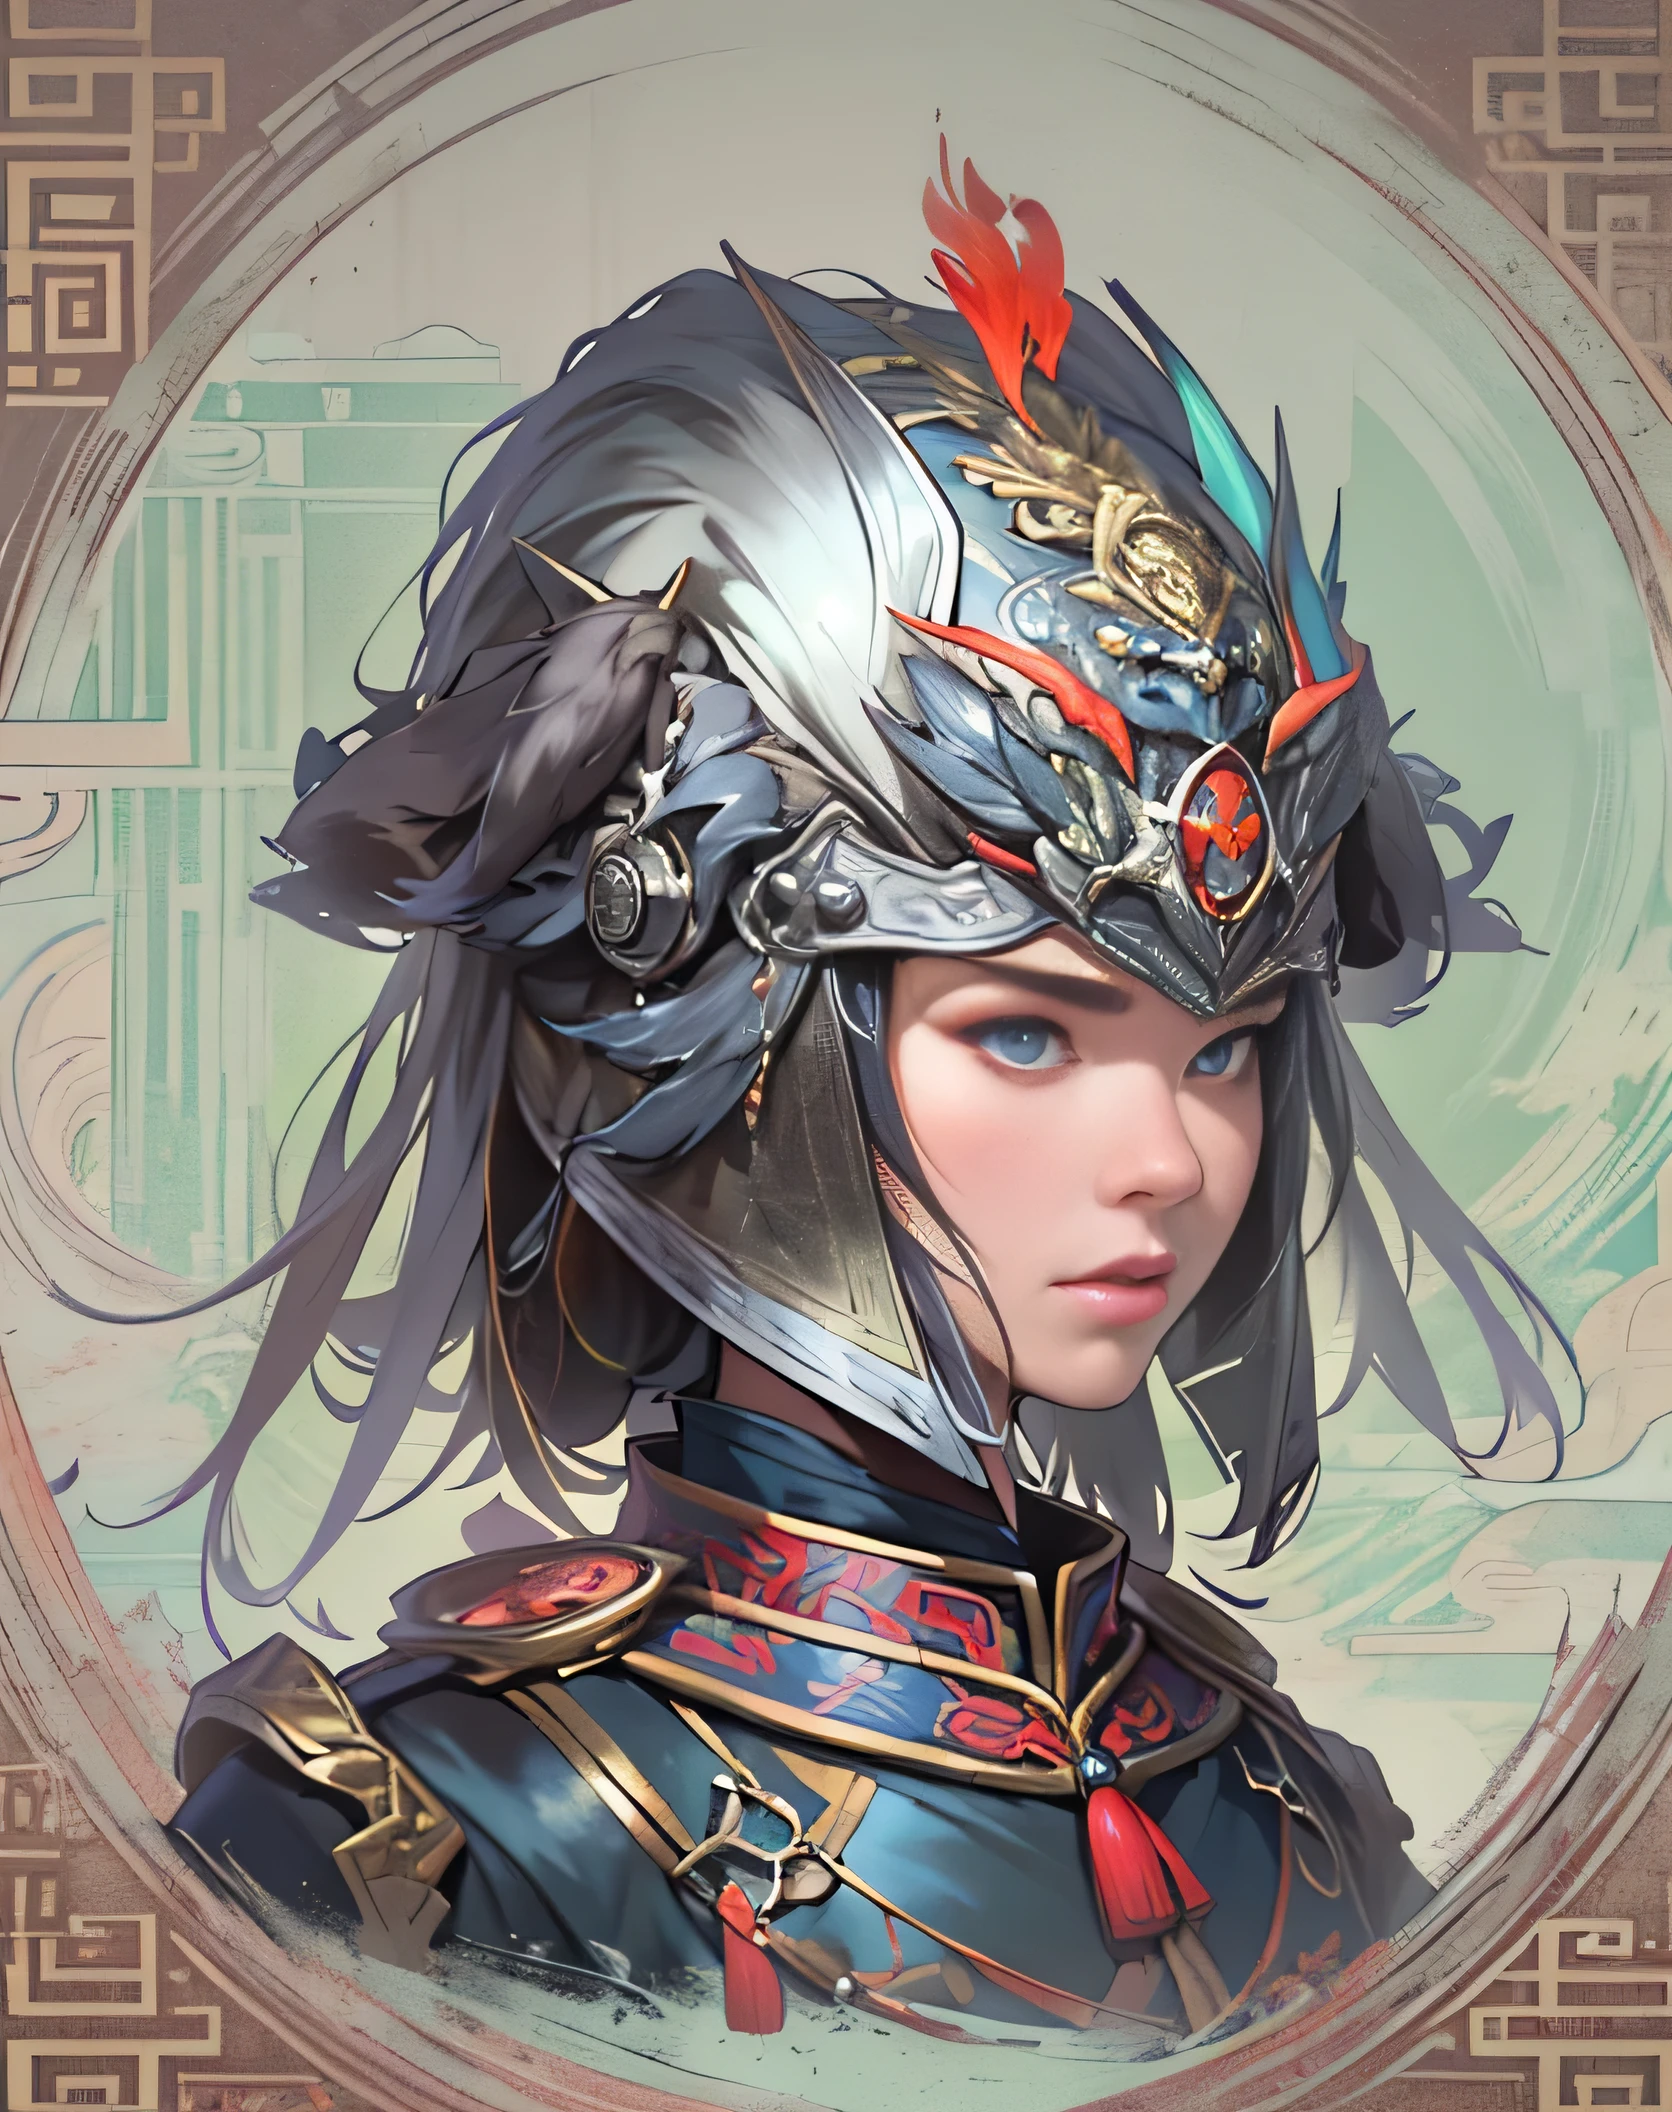 中式, 女將軍&#39;頭盔, 銀色鎧甲頭盔, 色彩繽紛的設計, 頭盔躺在地板上, 銀色和黑色套裝, Oriental 女將軍&#39;頭盔, 卡通風格